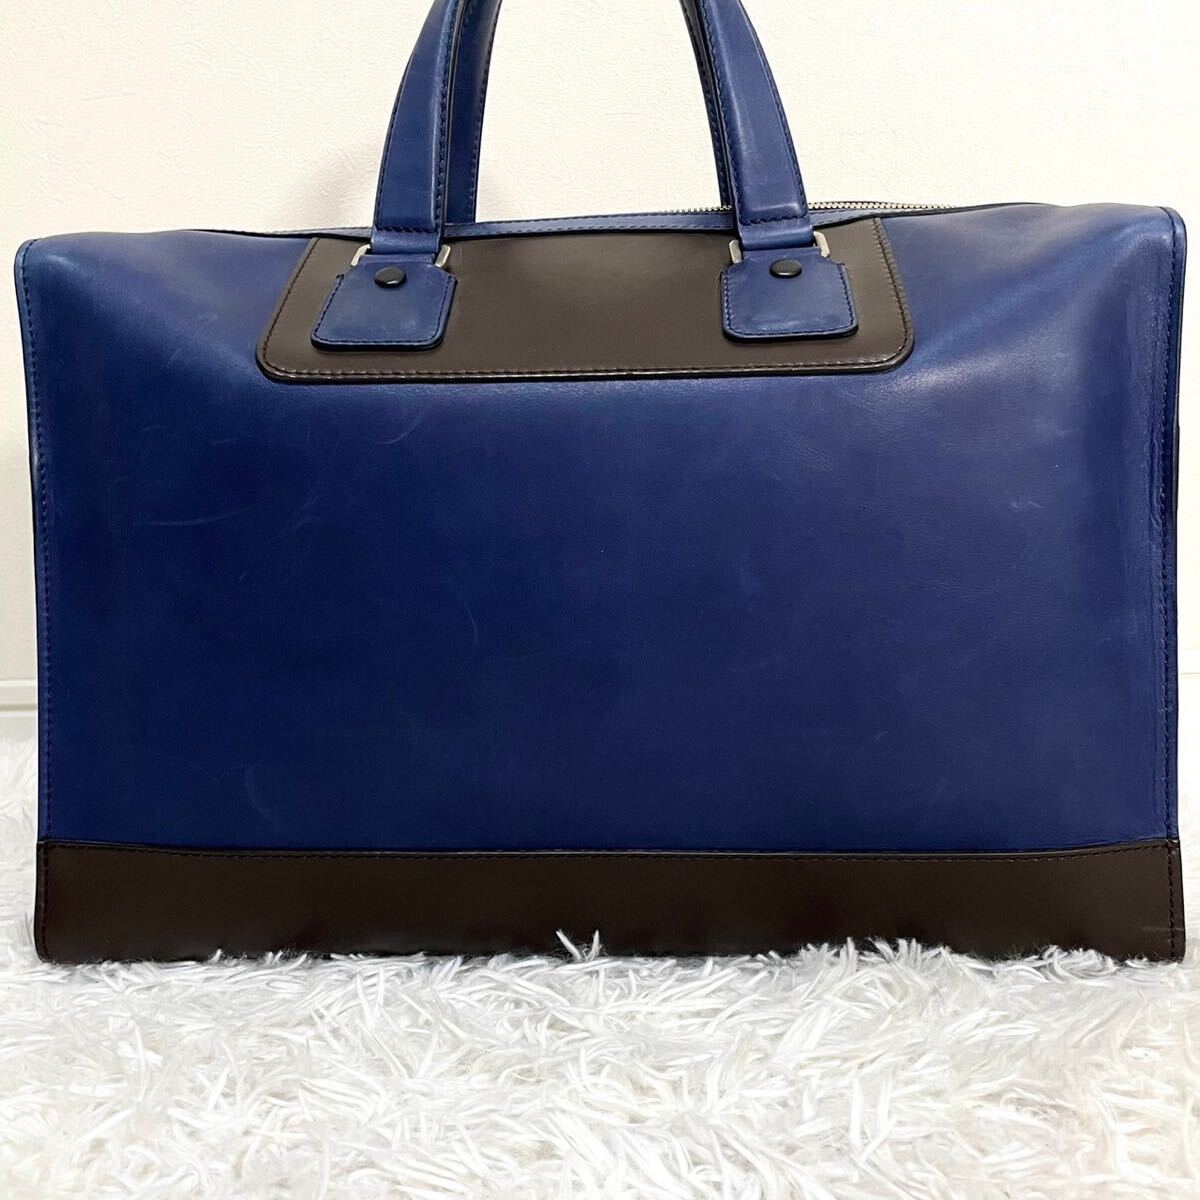  редкий дизайн превосходный товар Bally BALLY мужской бизнес сумка "Boston bag" 2way плечо наклонный .. большая вместимость все кожа темно-синий путешествие портфель 